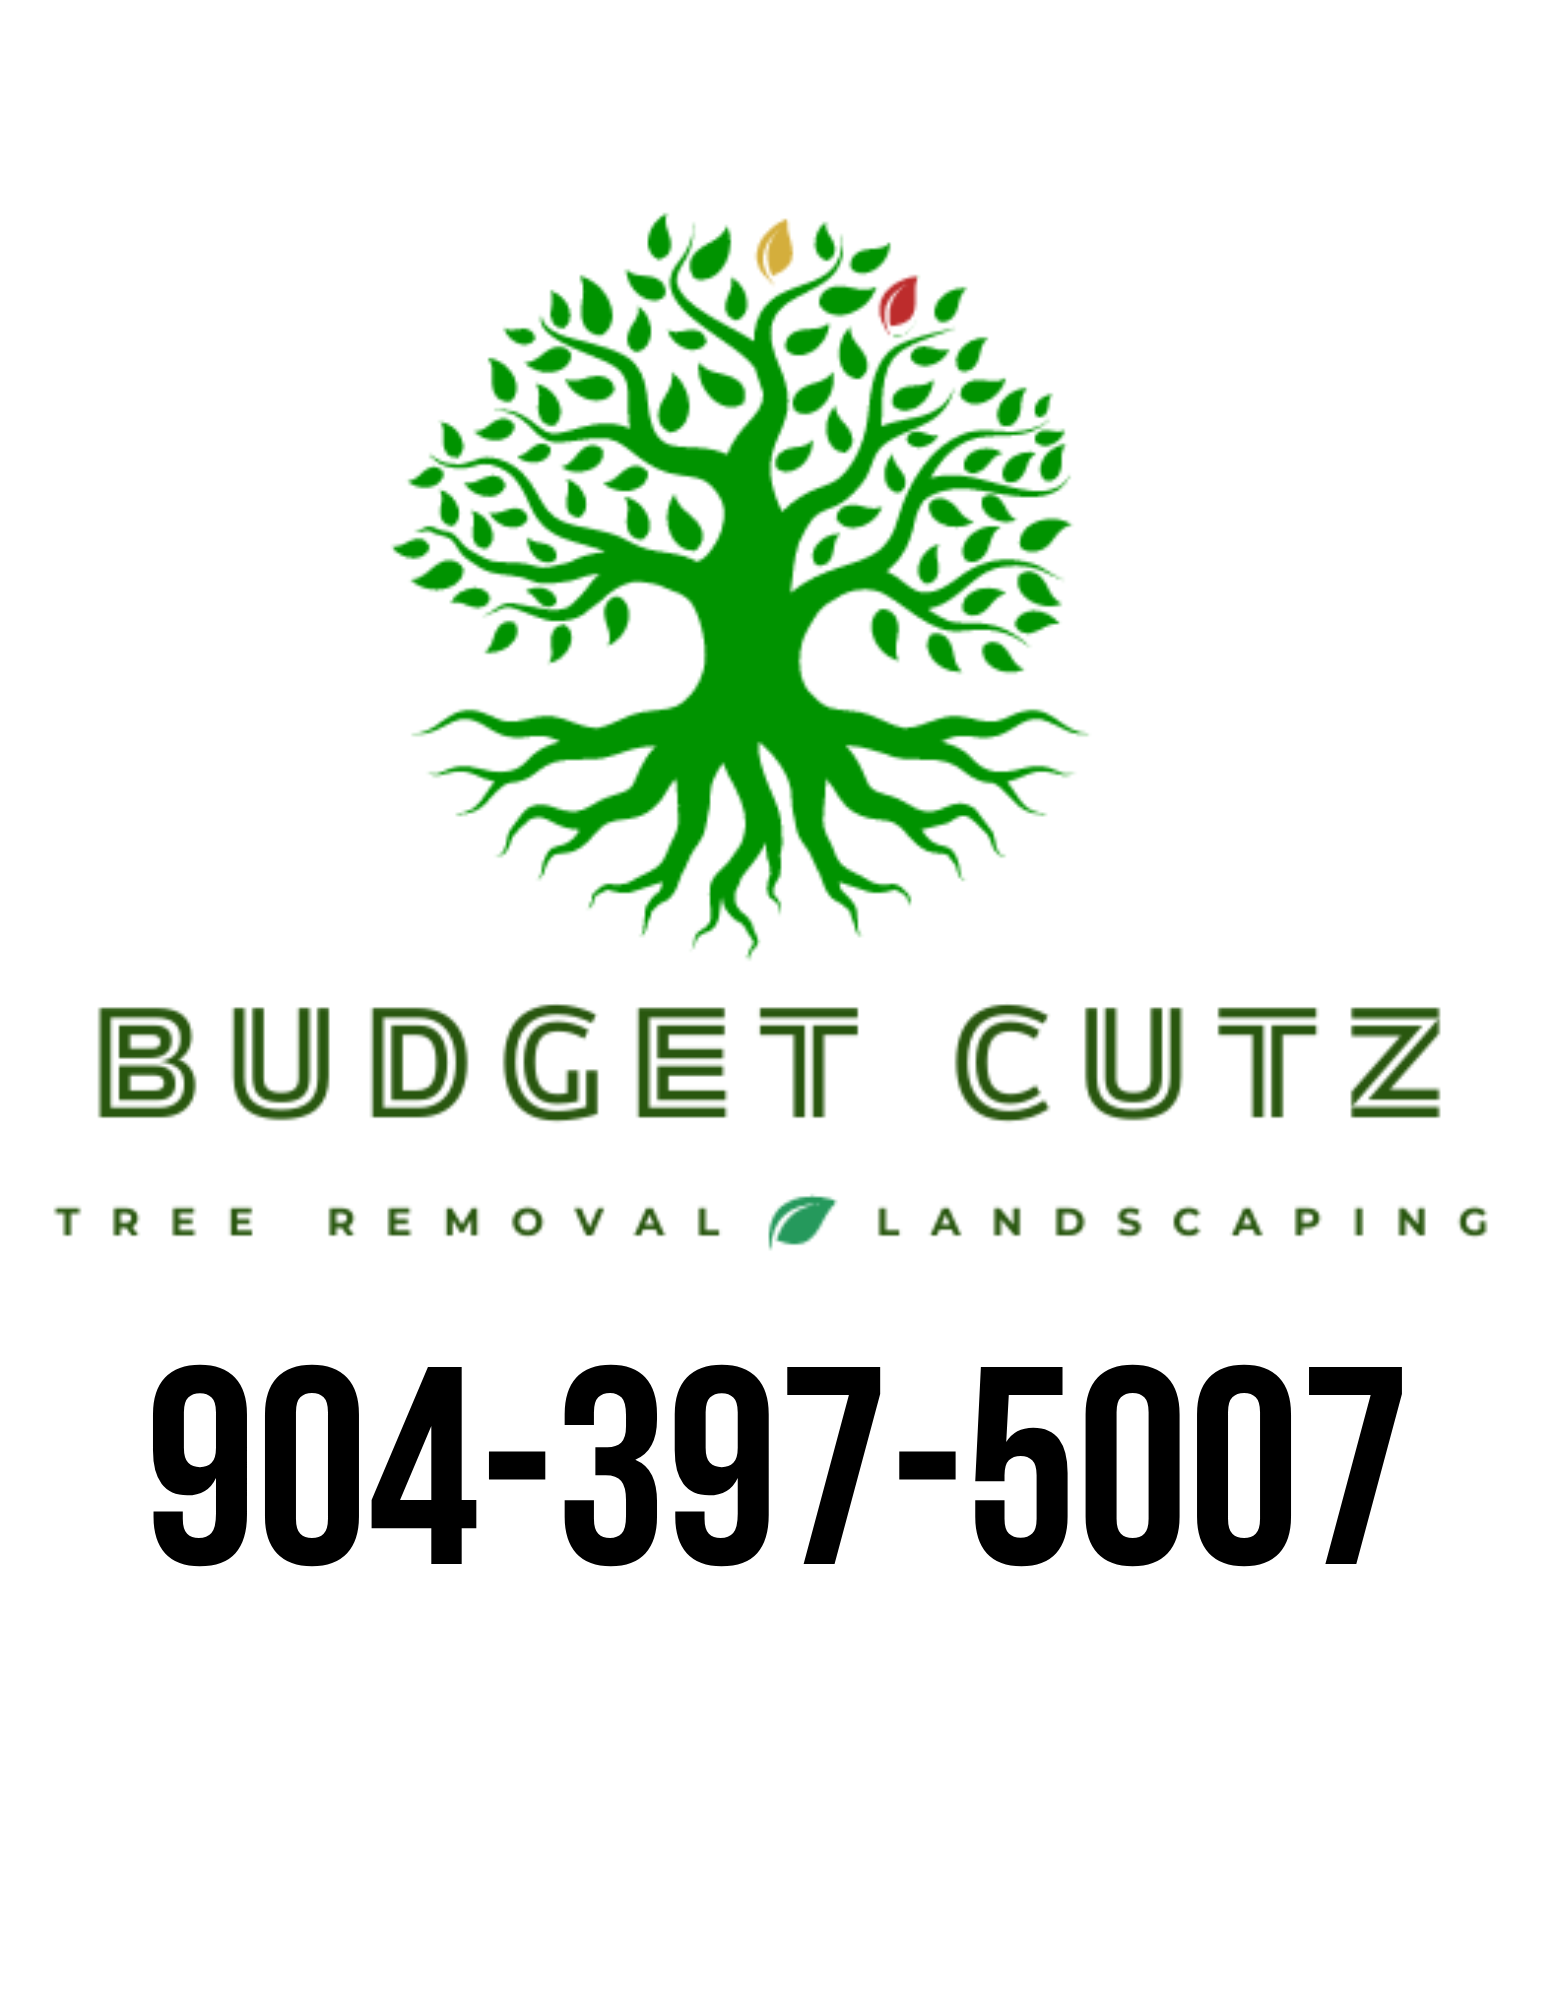 Budget Cutz Logo